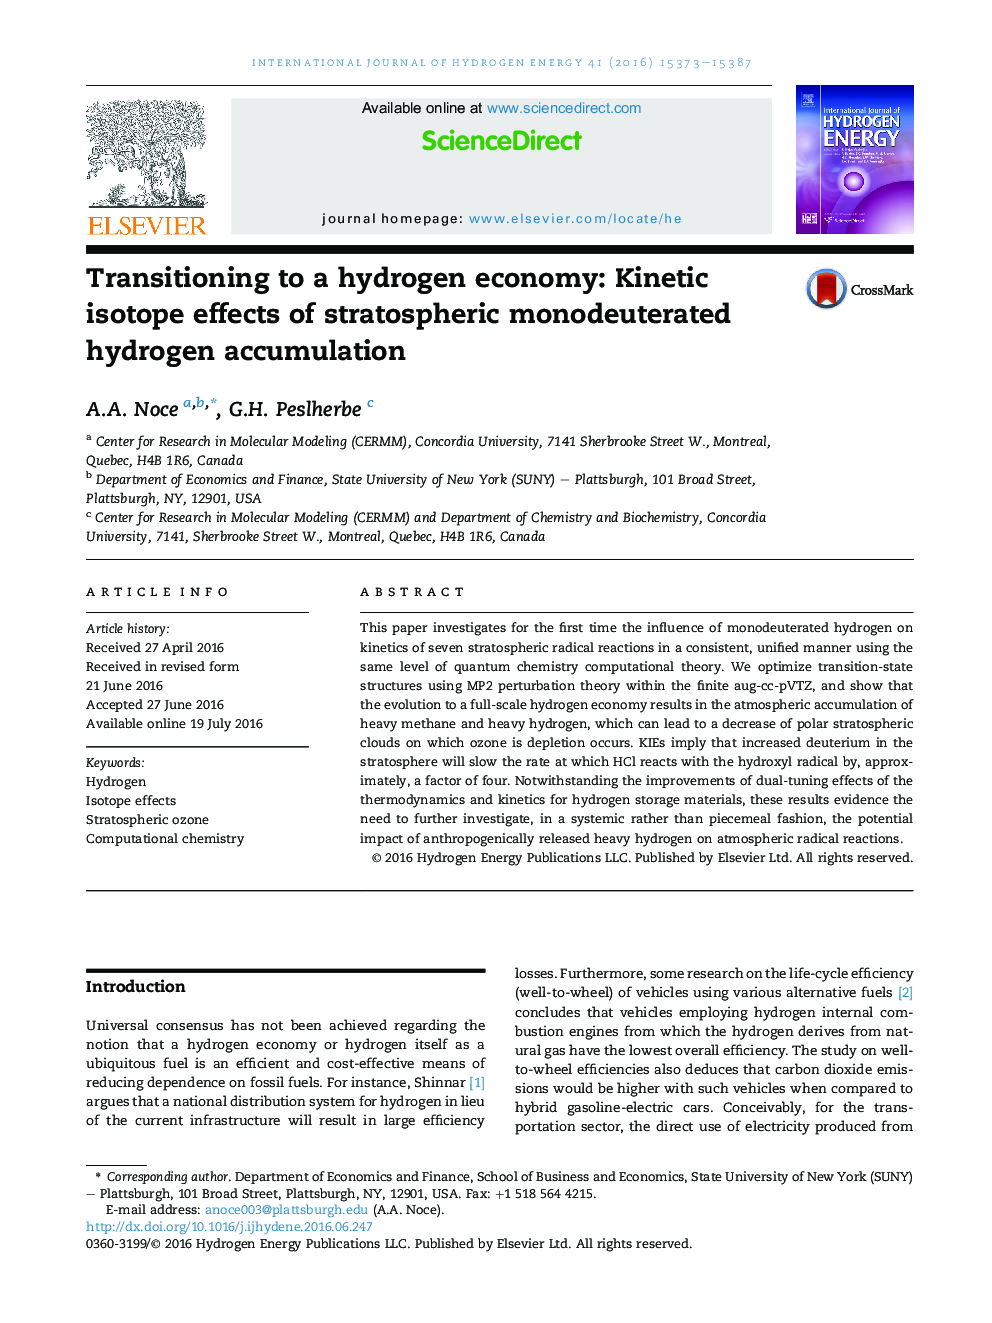 انتقال به یک اقتصاد هیدروژنی: اثرات ایزوتوپ سینتیکی تجمع هیدروژنه استراتوسفر 